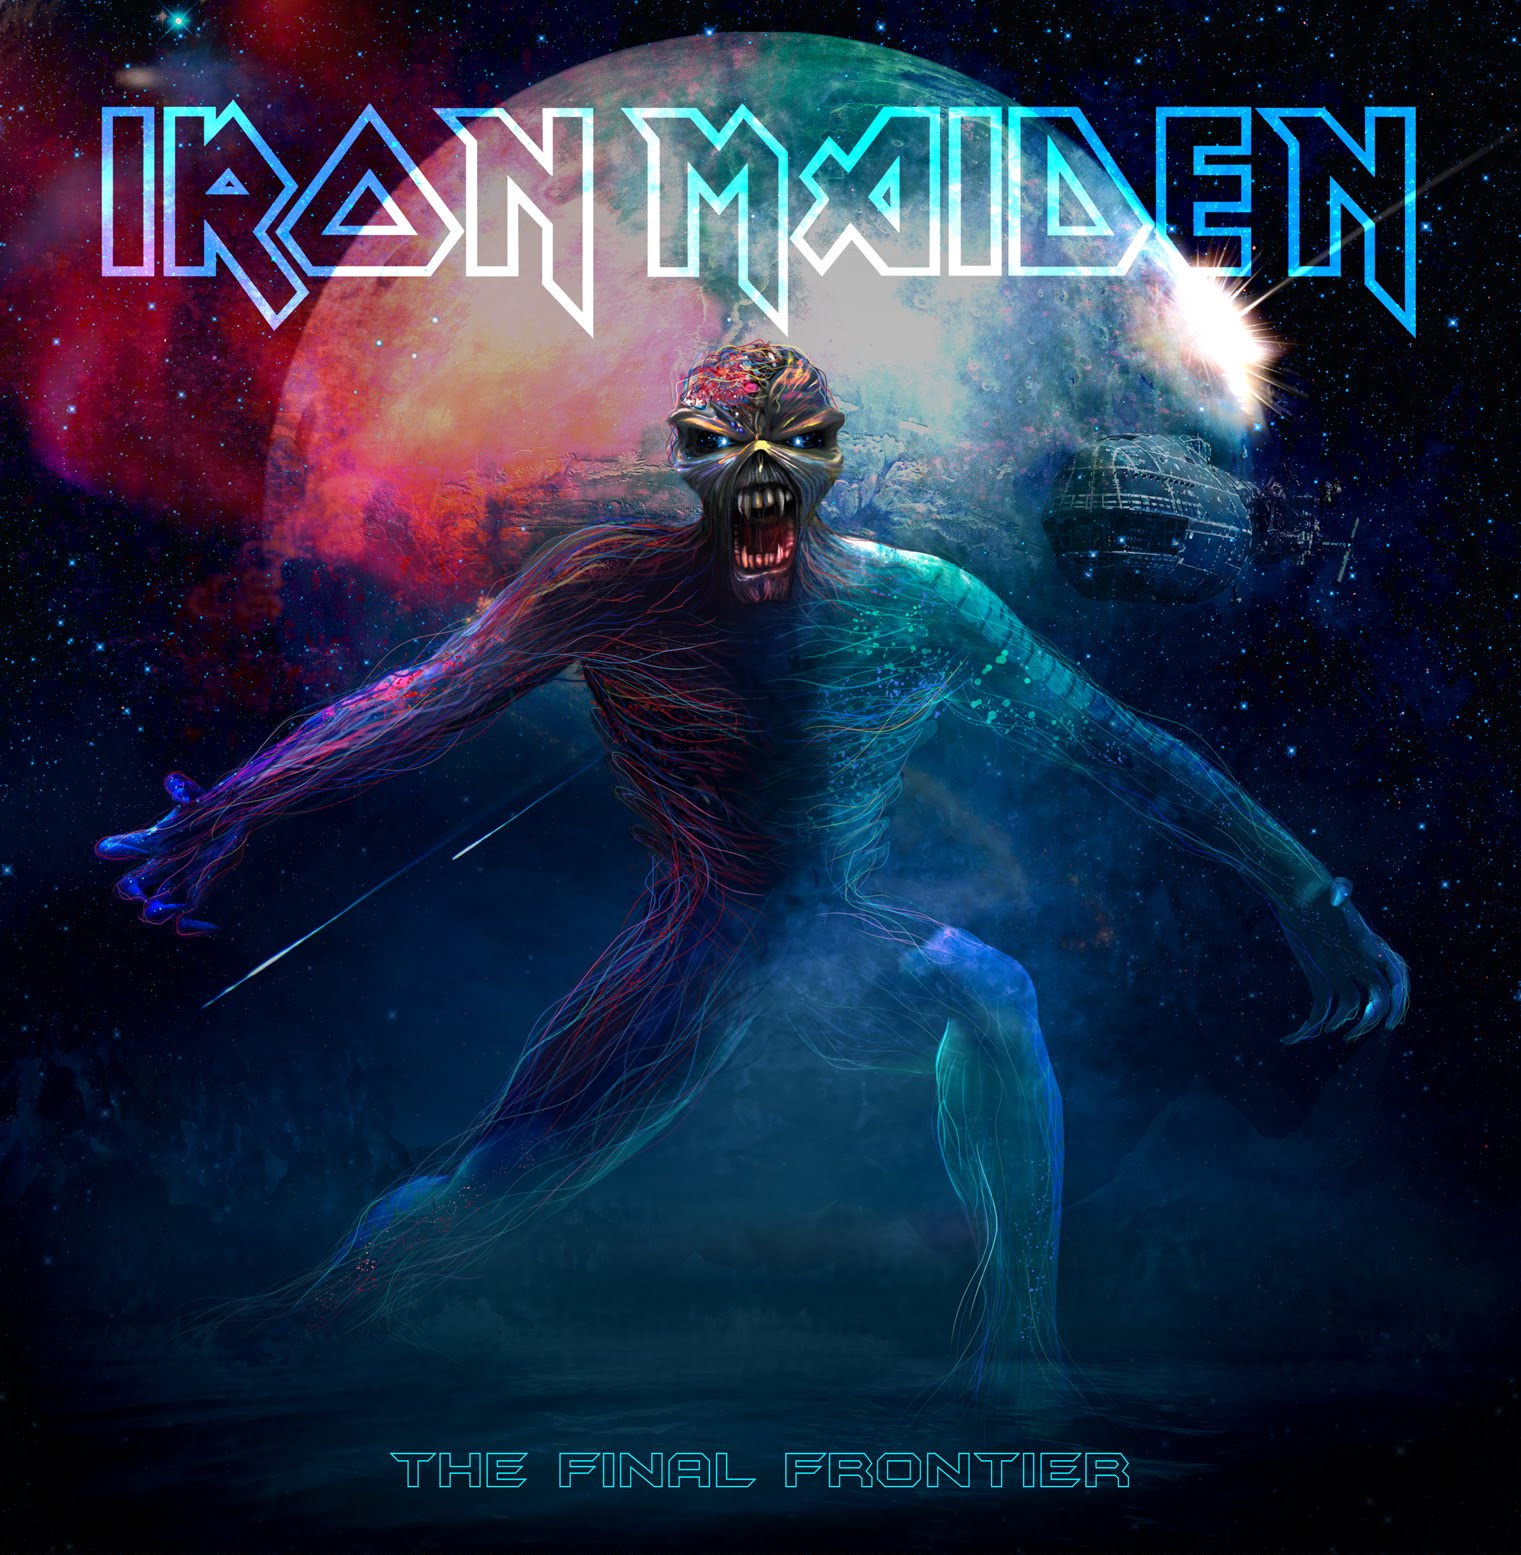 Nuevo disco de Iron Maiden - The Final Frontier, el 16 de Agosto - Página 5 36FinalFrontier